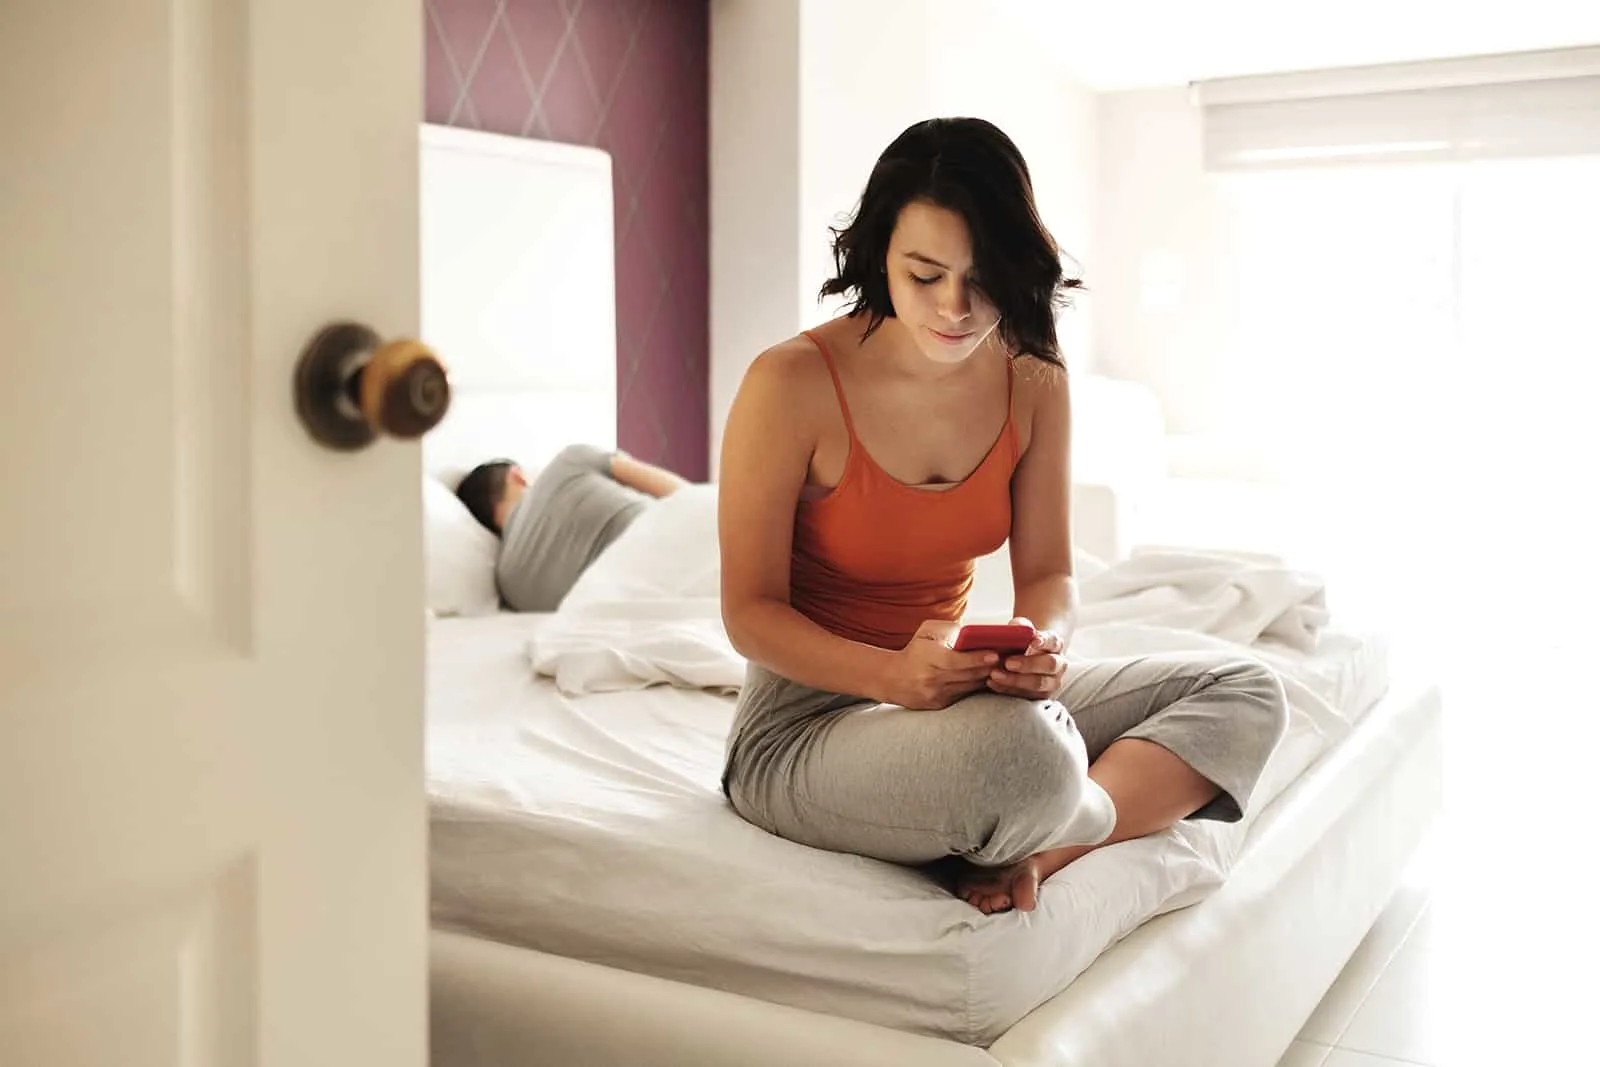 Frau SMS mit einem Smartphone, während ihr Freund im Bett liegt